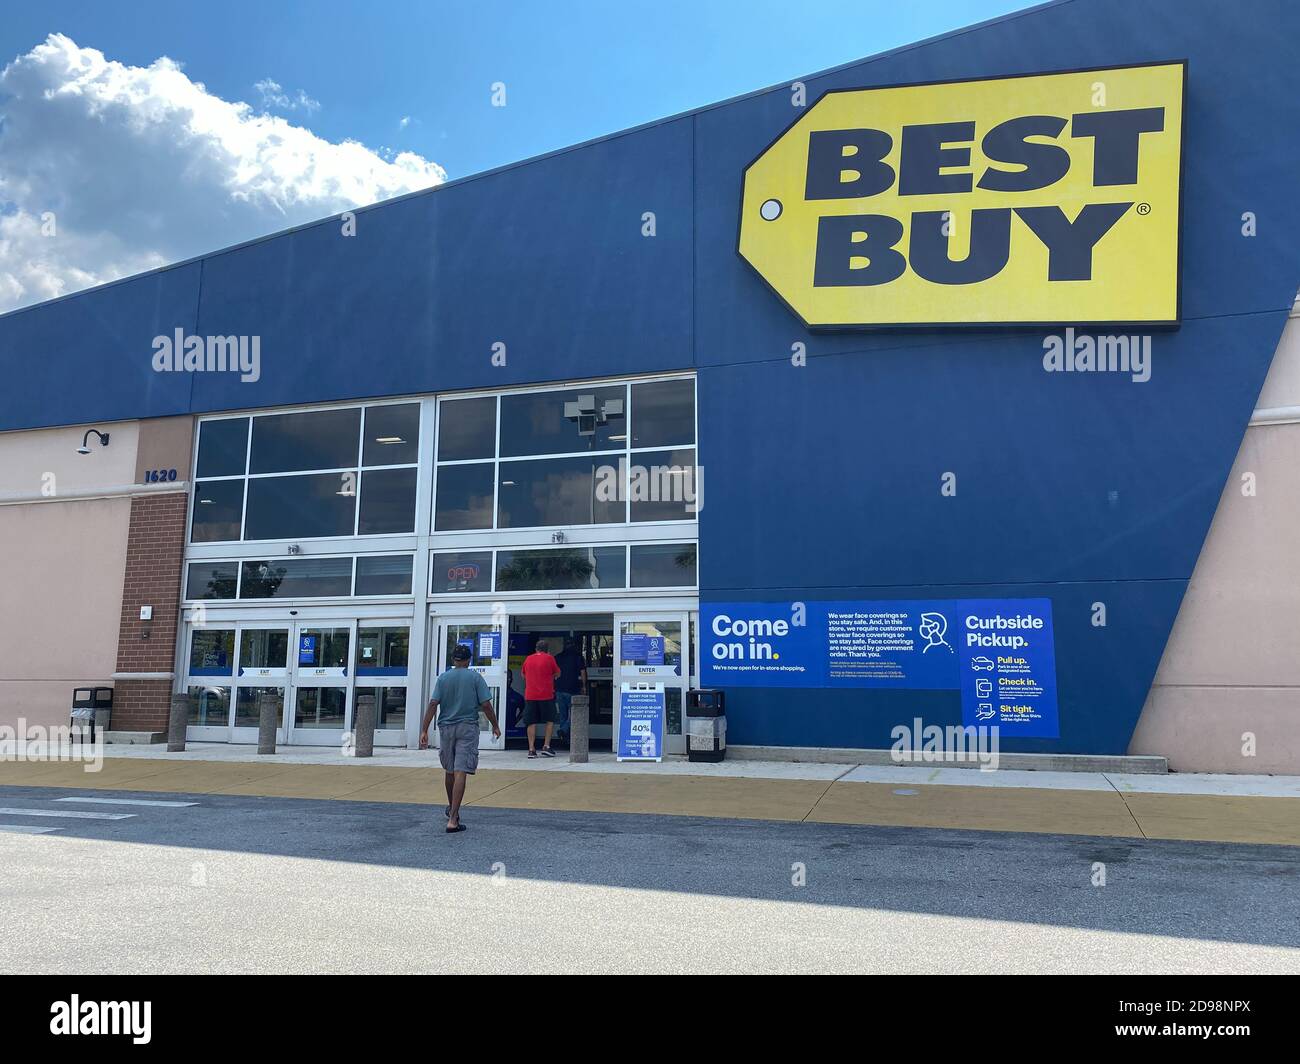 Orlando, FL/USA - 10/14/20: Il centro commerciale di una catena di negozi di elettronica Best Buy situata a Orlando, Florida. Foto Stock